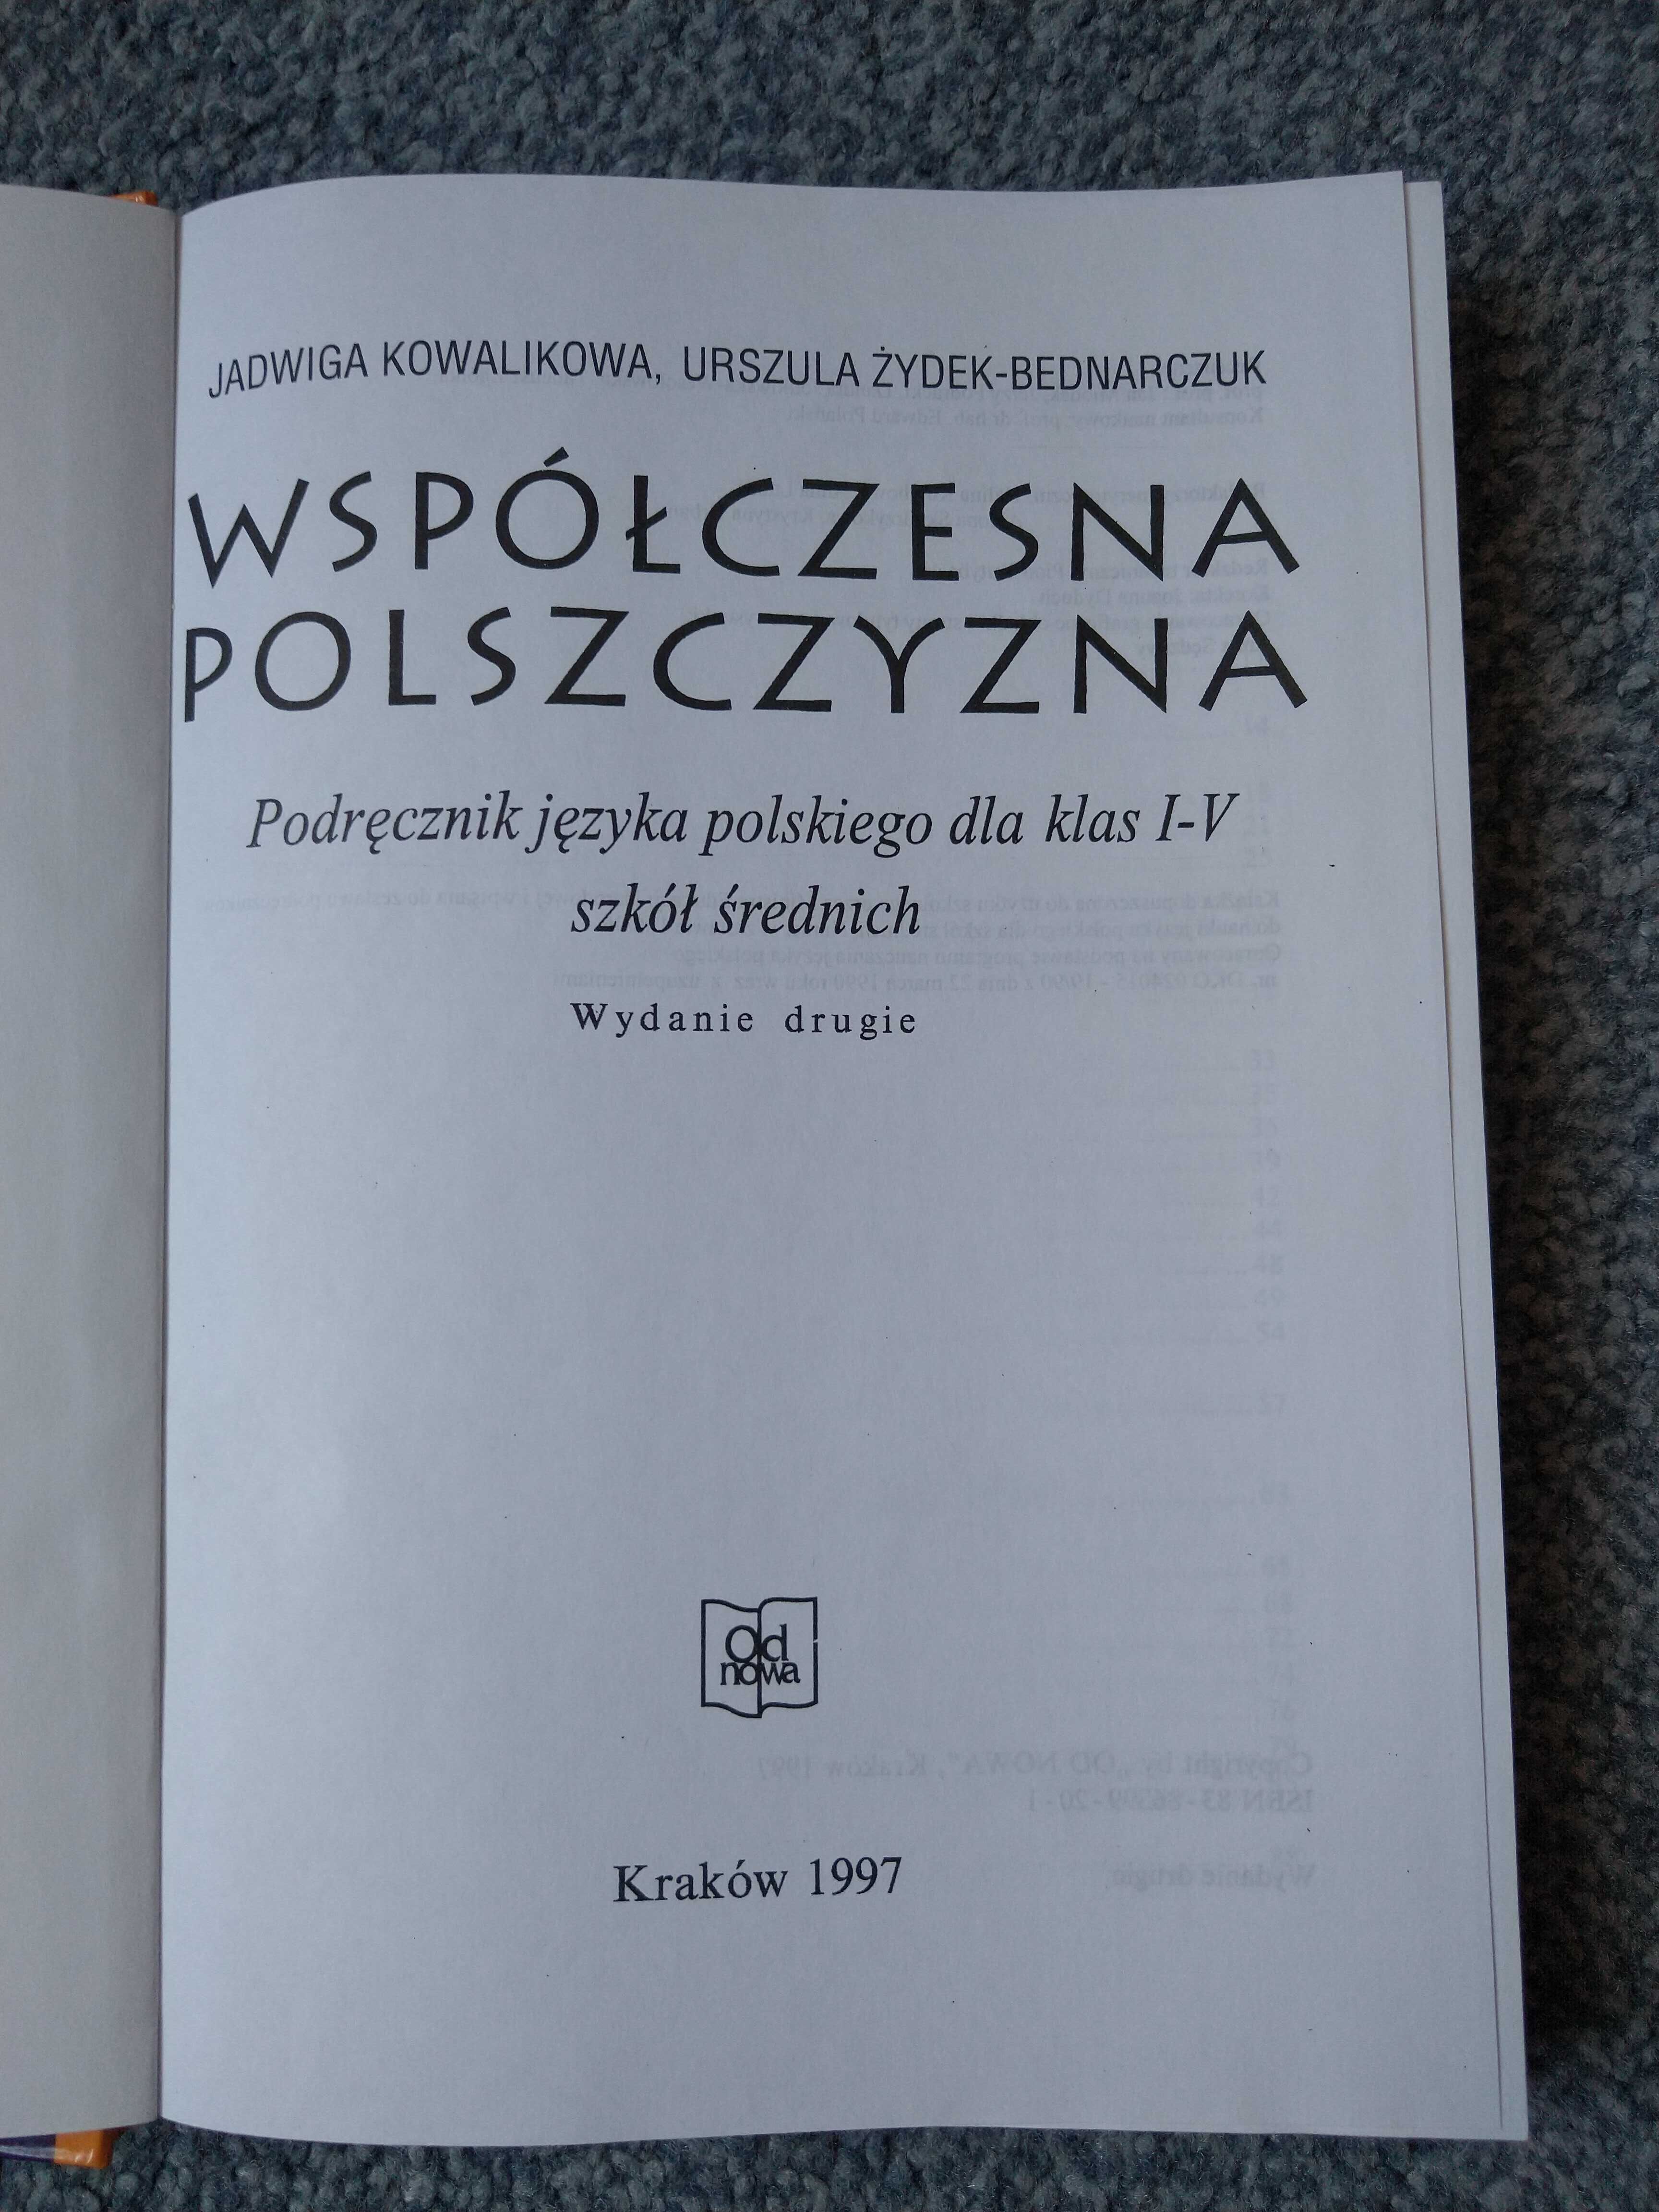 "Współczesna polszczyzna" podręcznik języka polskiego